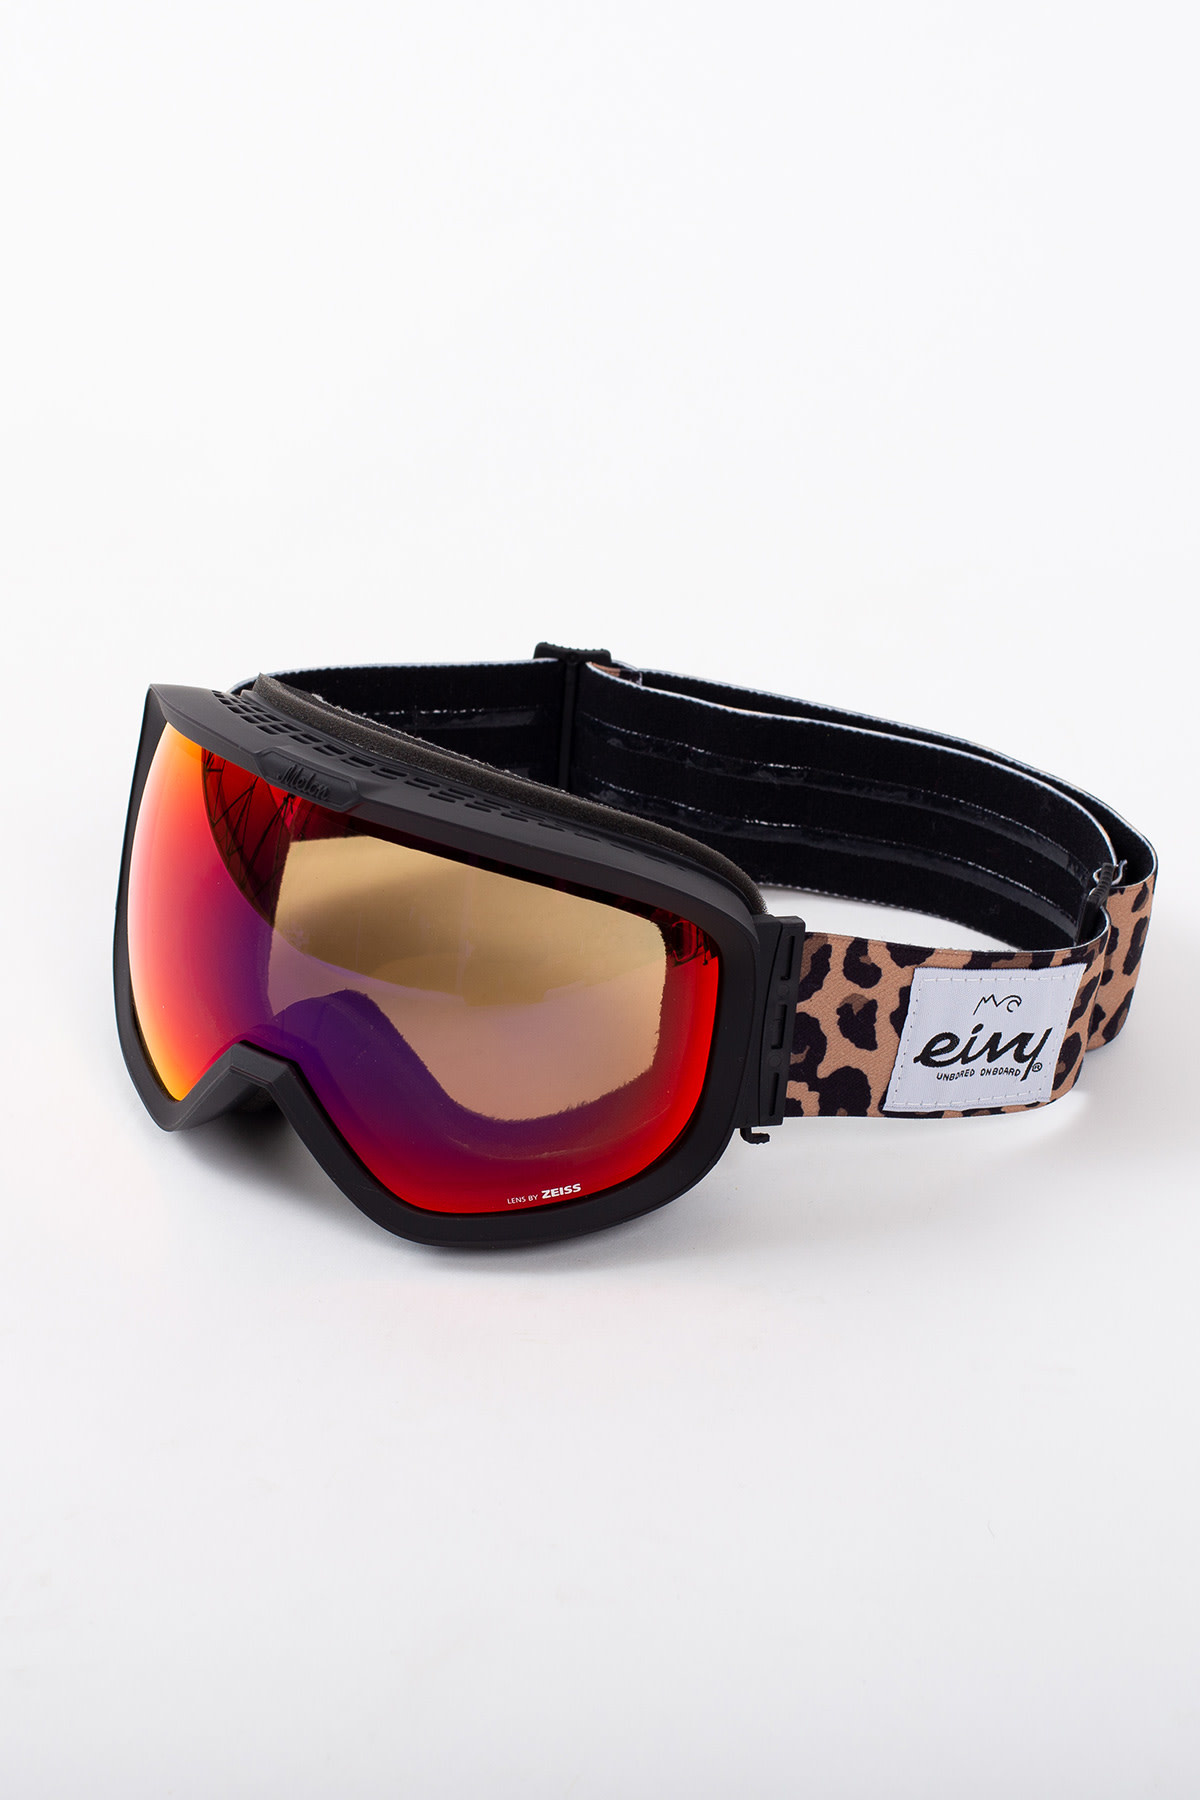 Eivy Eivy x Melon Optics Jackson Goggle (Leopard)